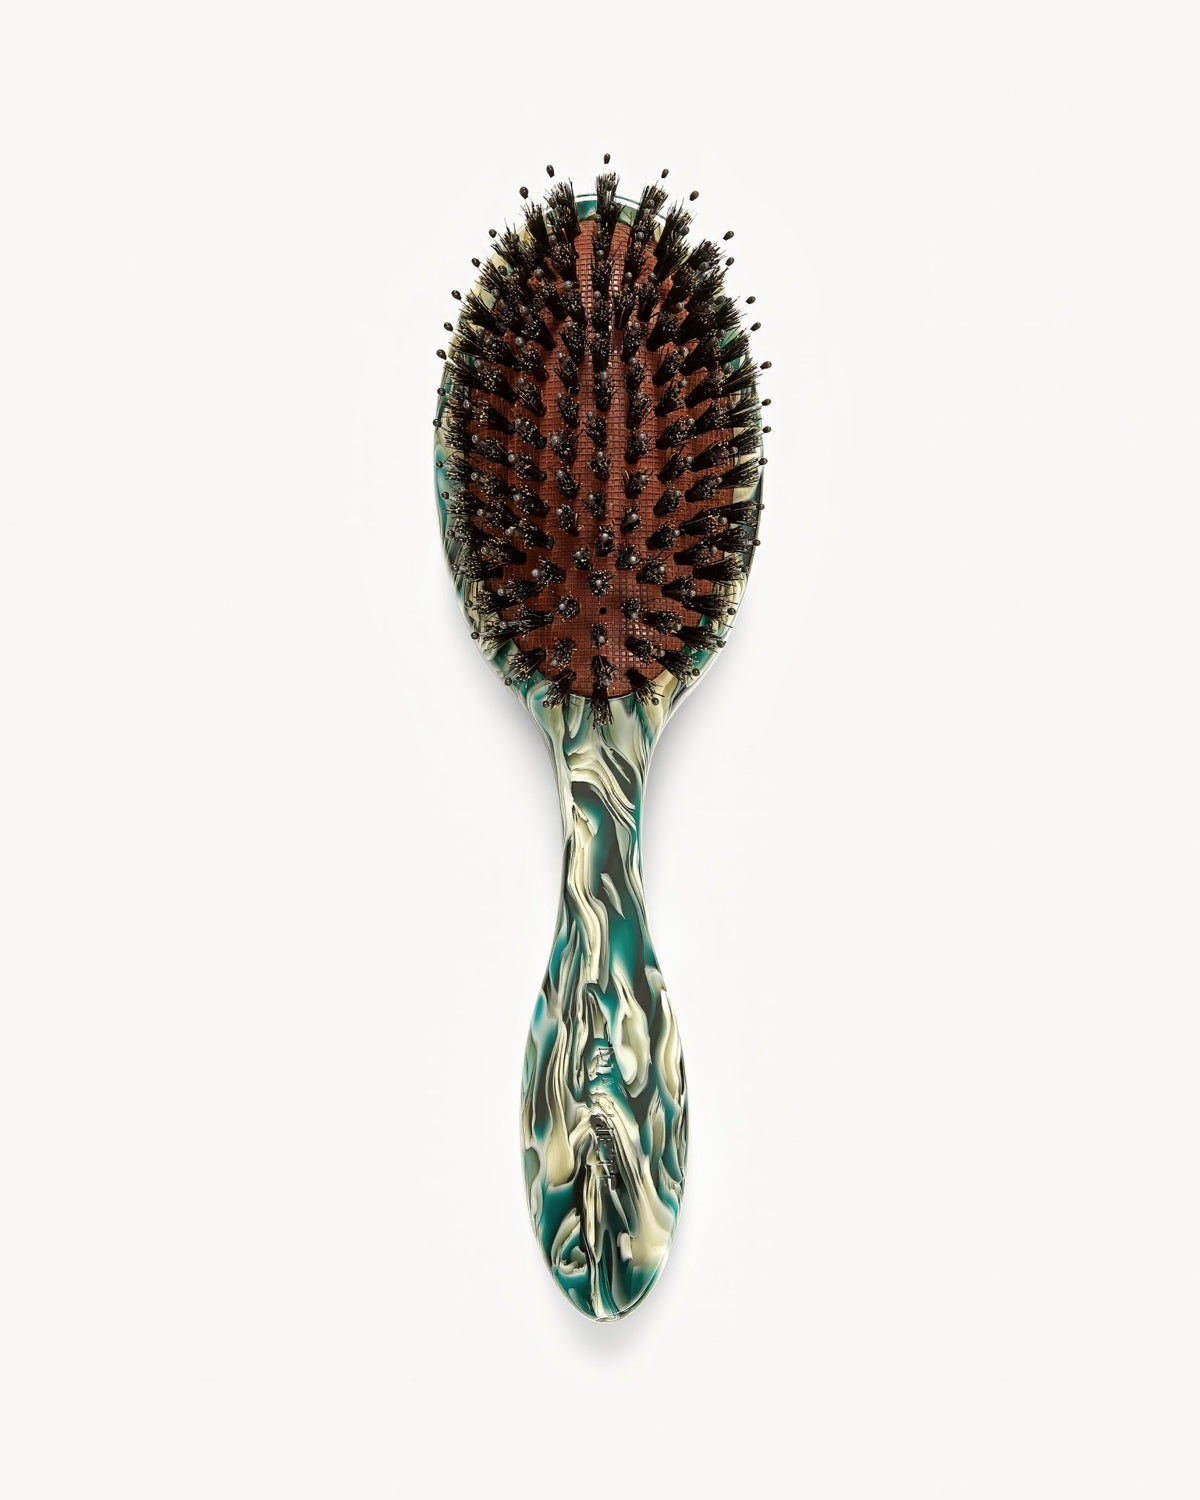 MACHETE Everyday Hair Brush in Stromanthe